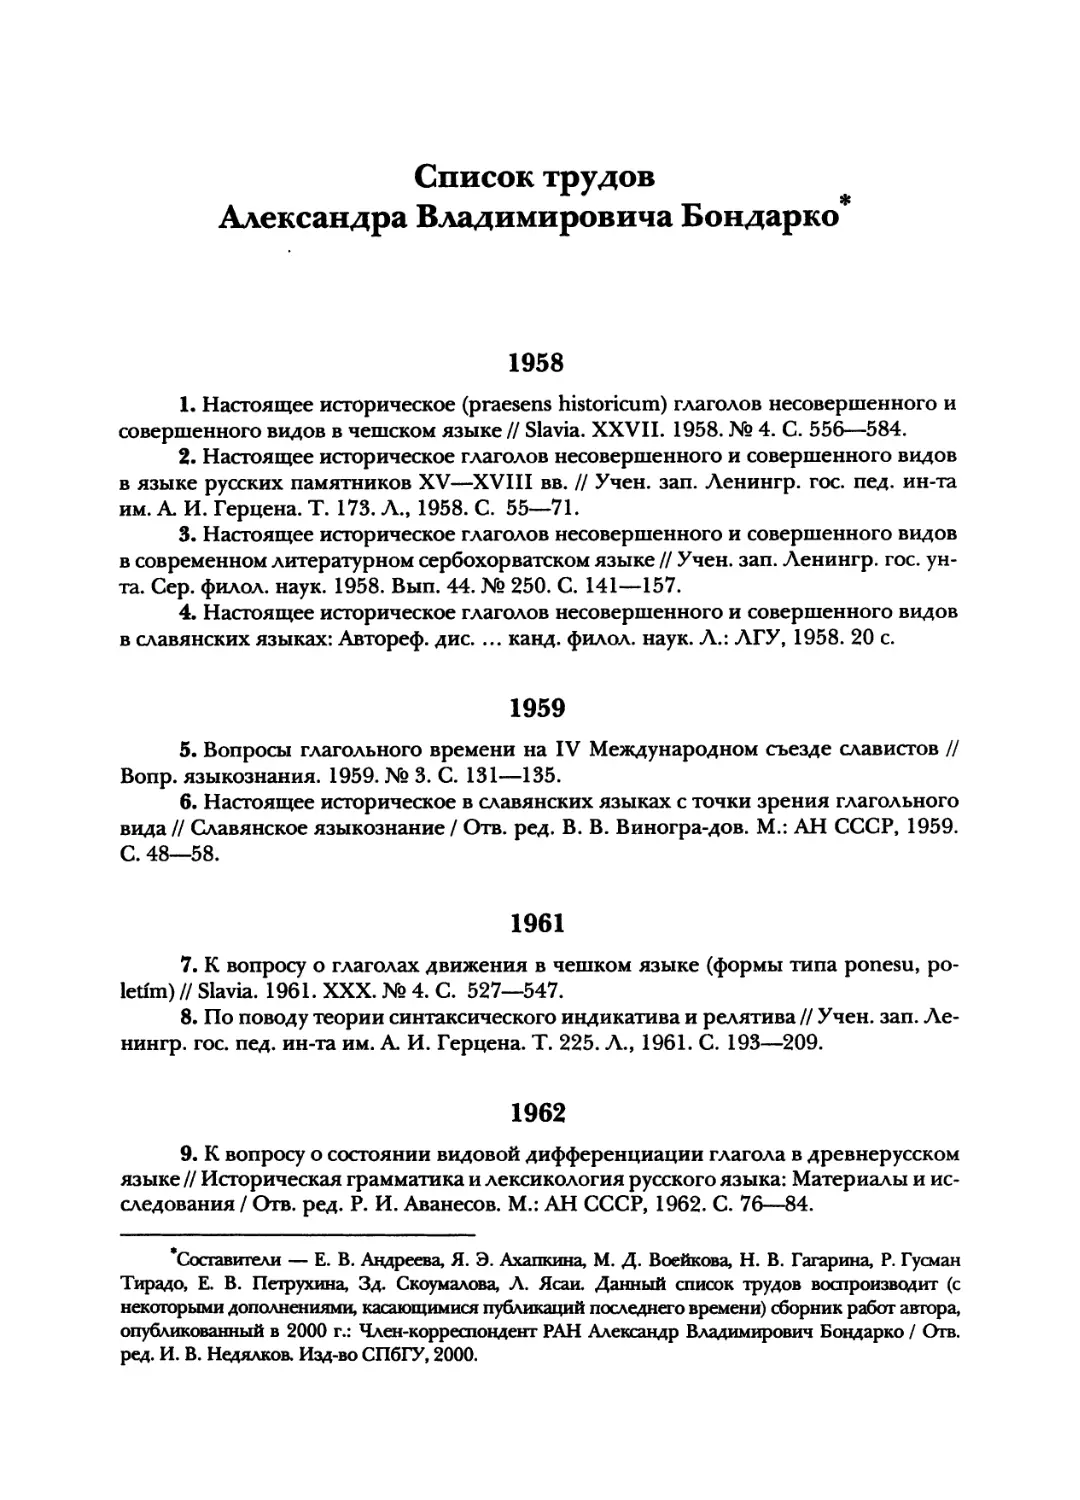 Список трудов А. В. Бондарко